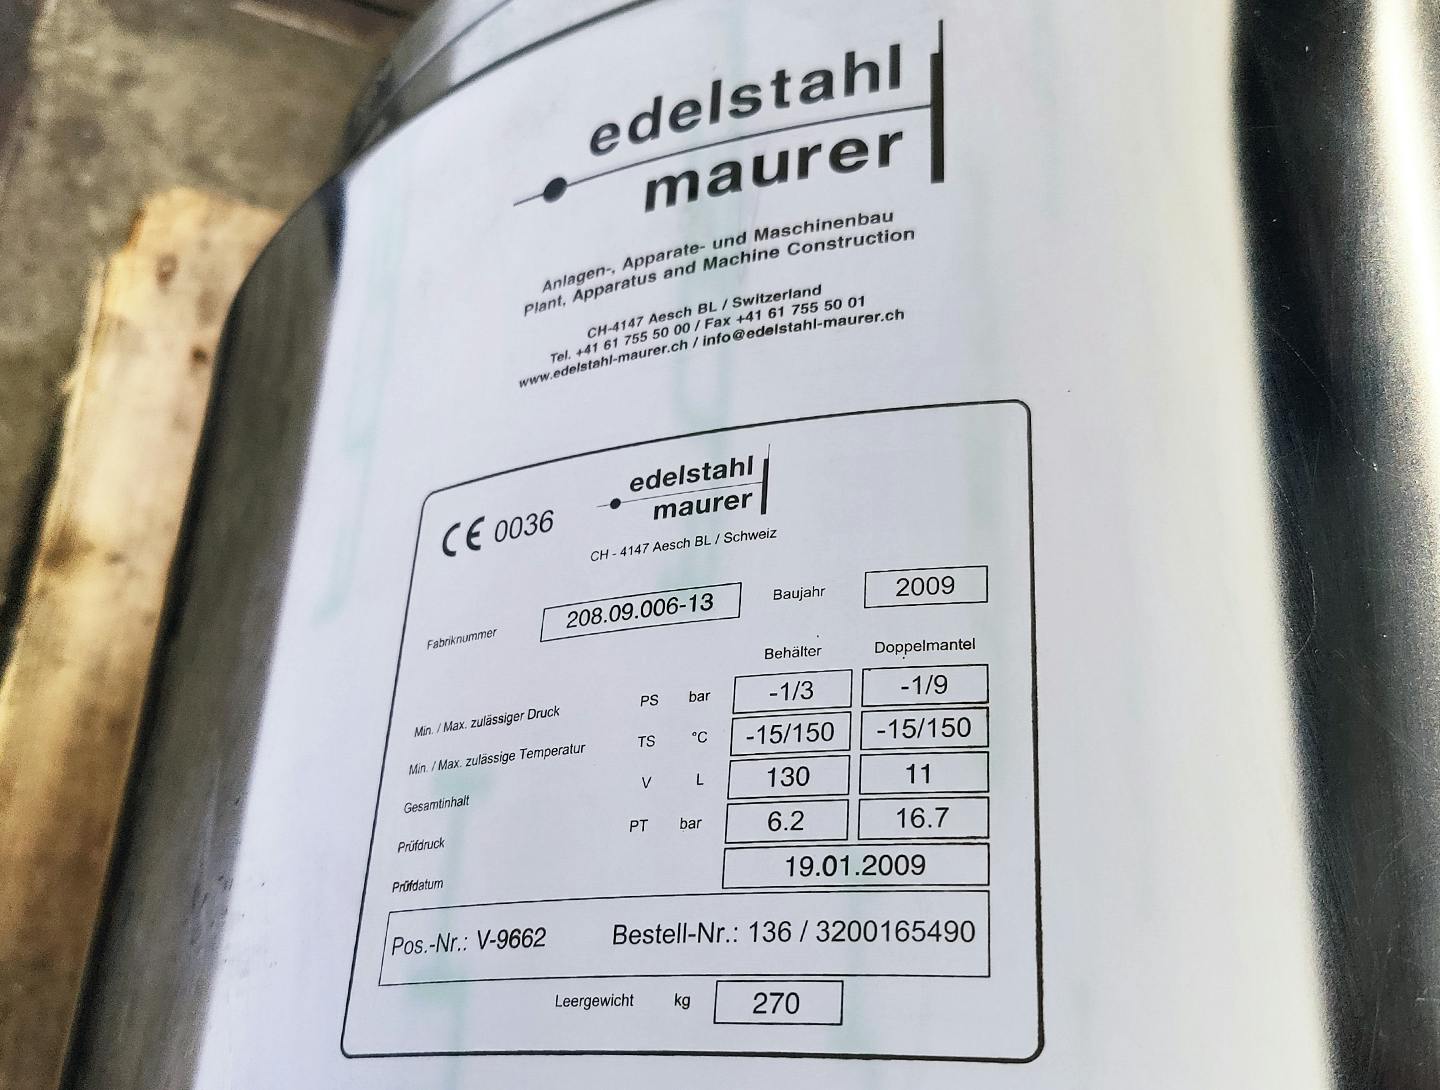 Edelstahl Maurer 130 Ltr. - Mirror-Polished Fraction Collector (Pharma Design) - Stainless Steel Reactor - image 10